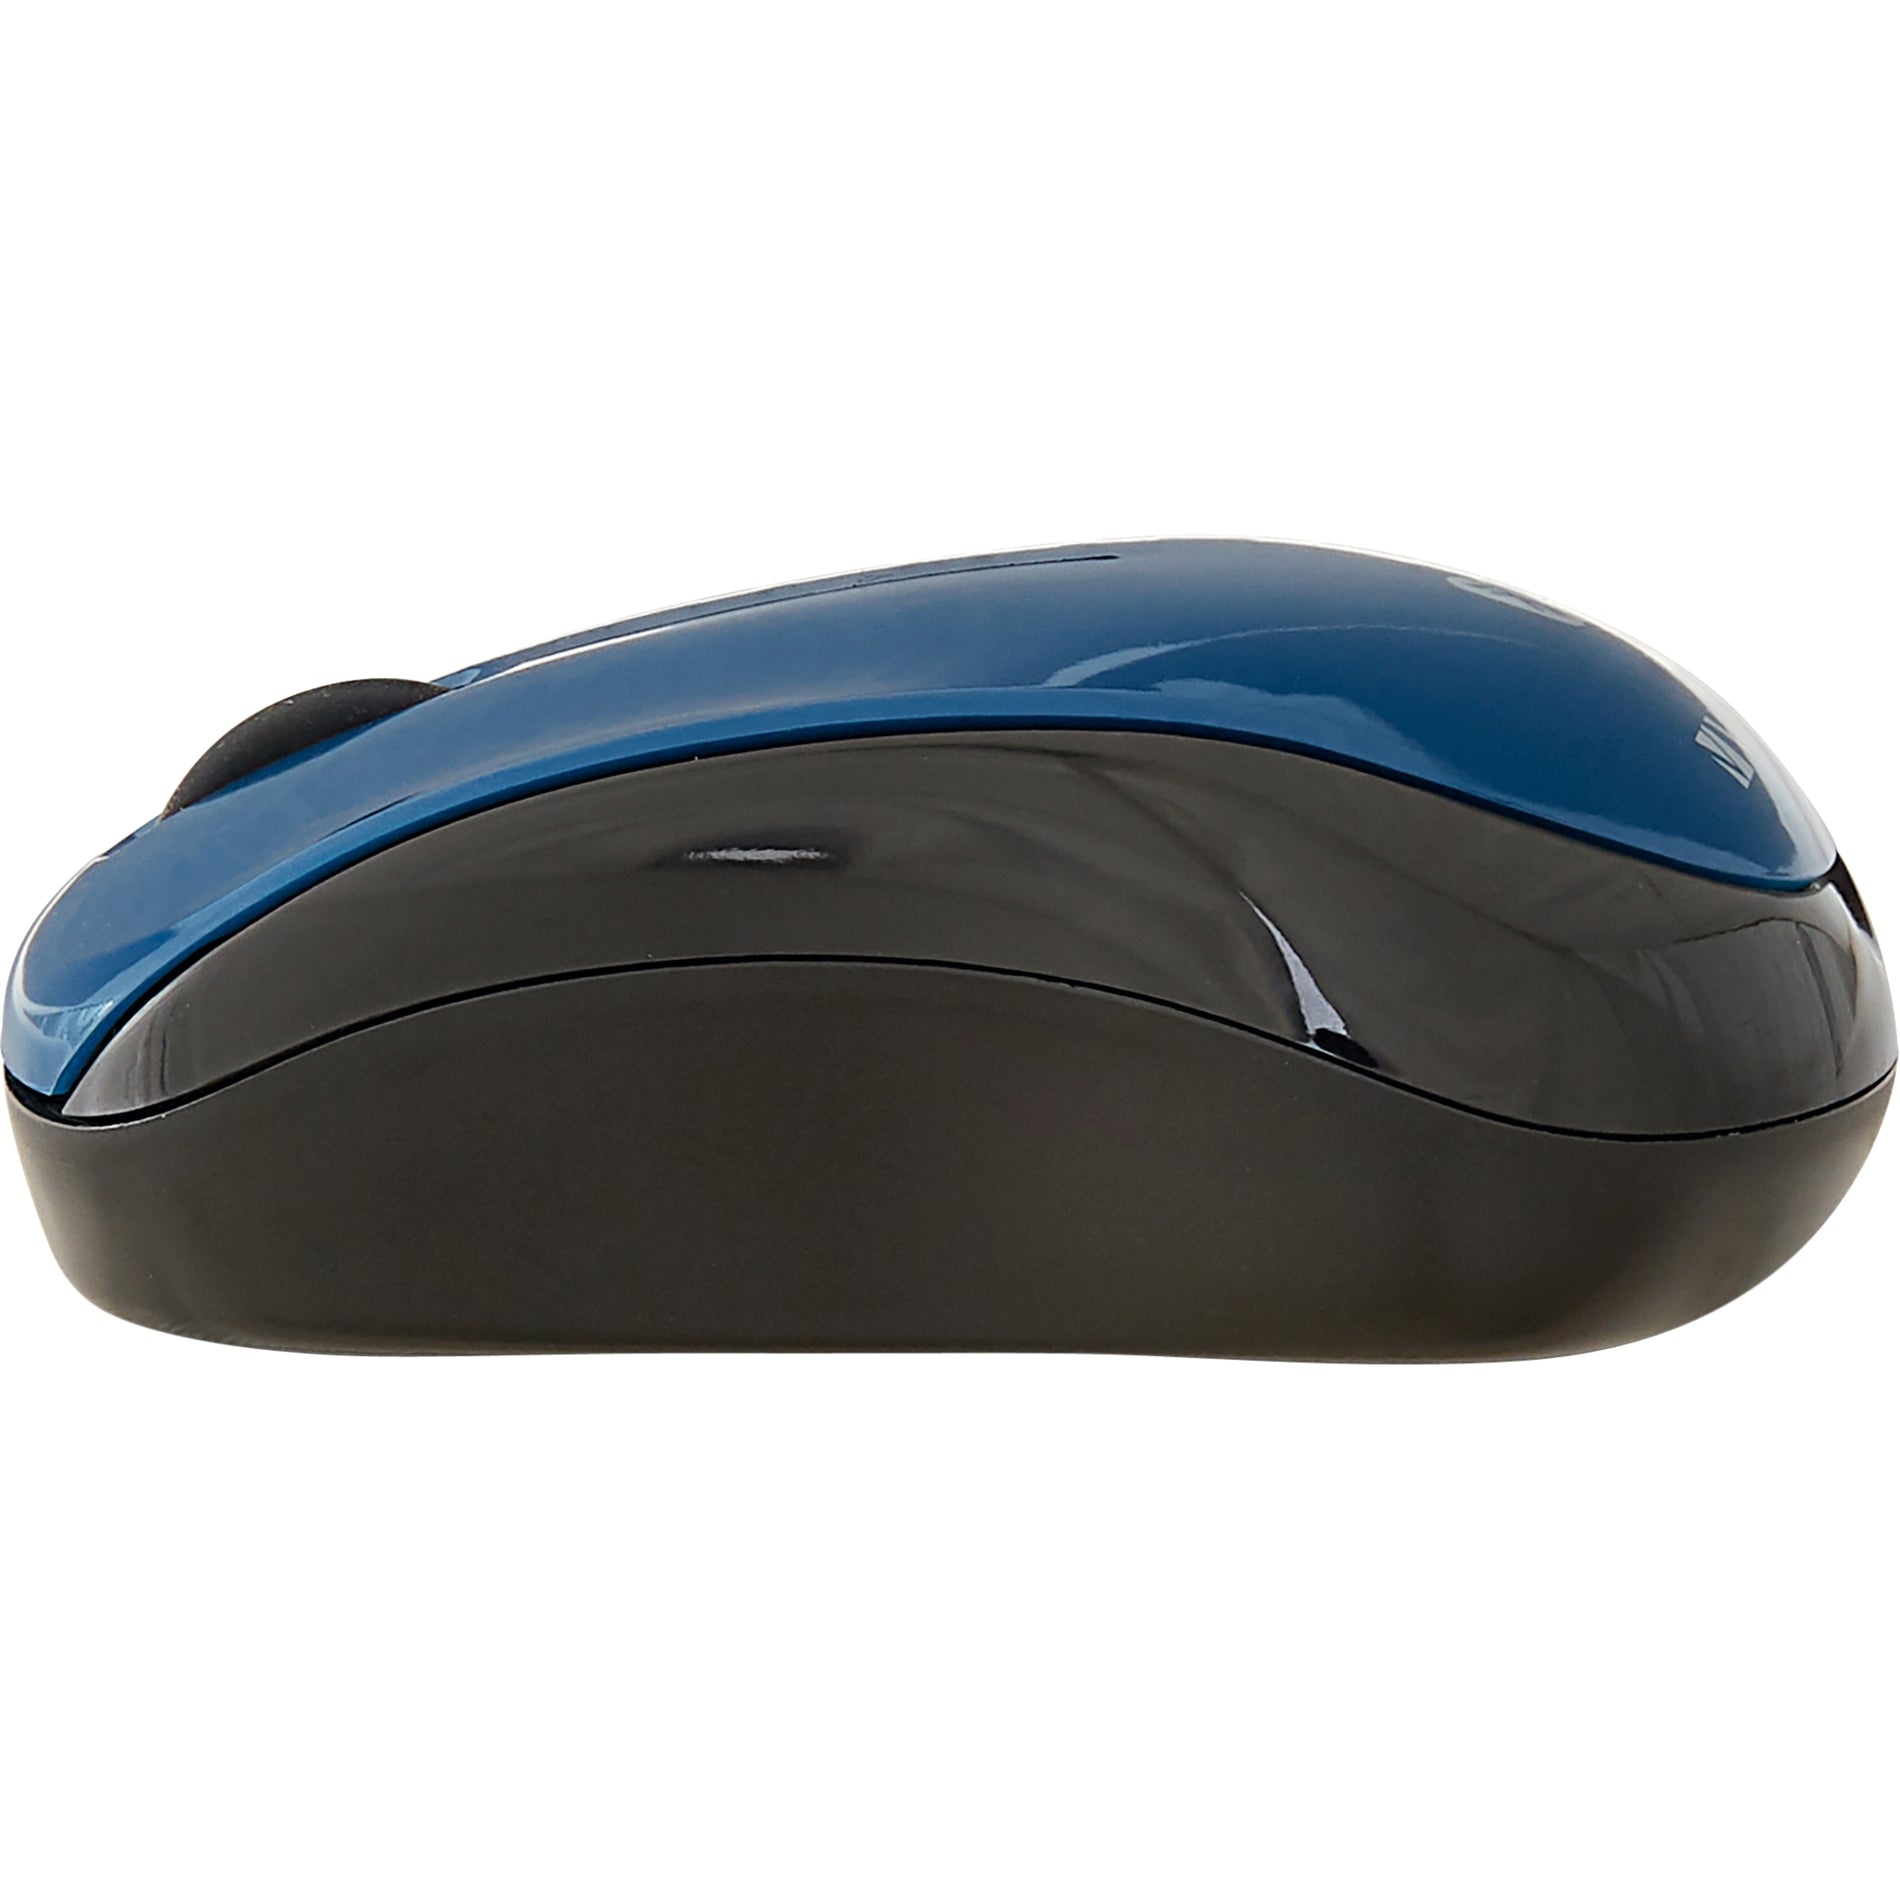 Verbatim 70239 Bluetooth Multi-Trac LED Tablet Mouse, Dark Teal